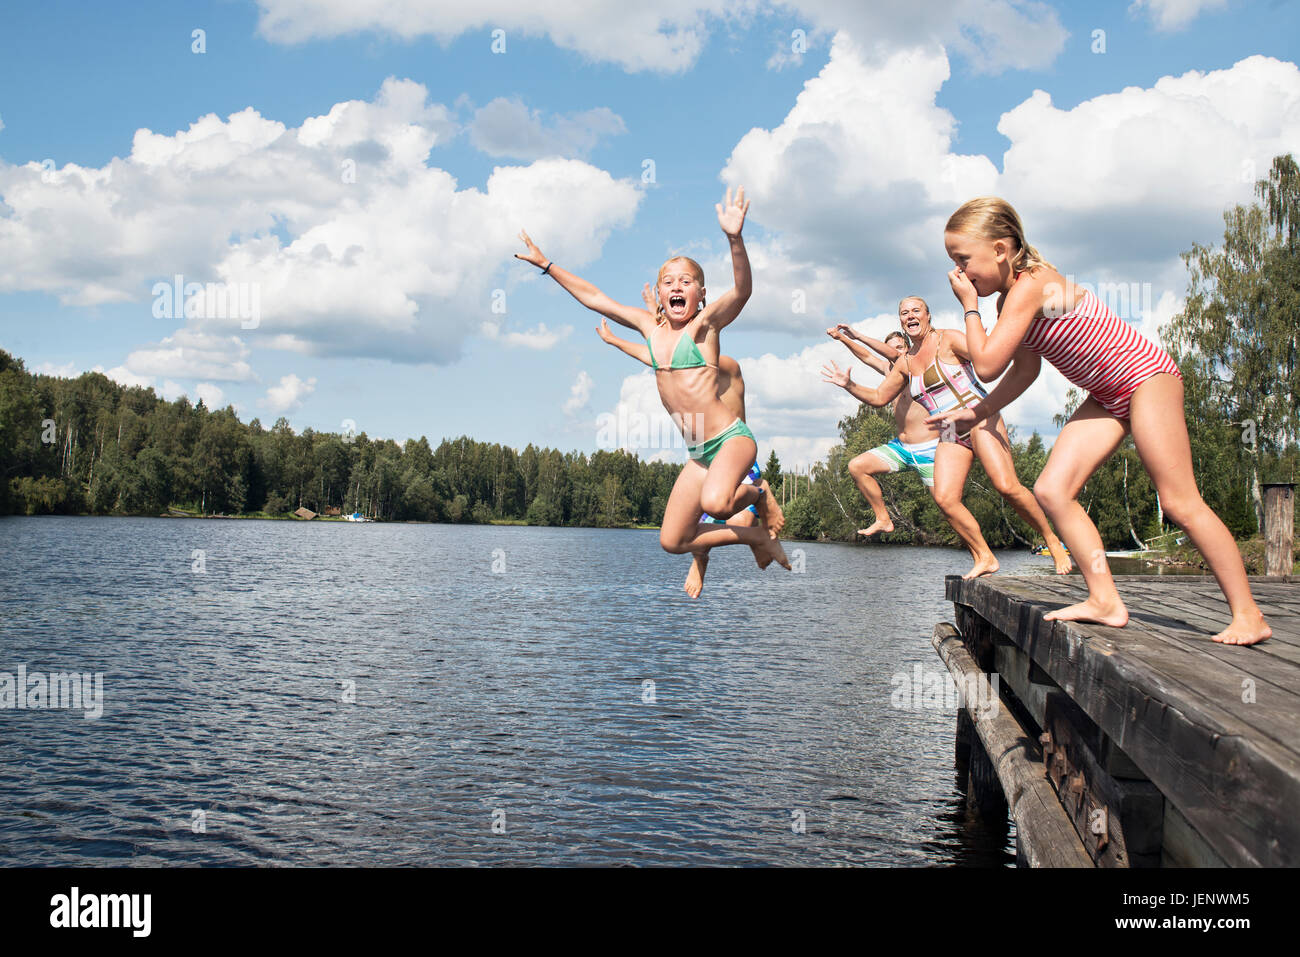 Jungen Und Mädchen Ins Wasser Springen Stockfotografie Alamy